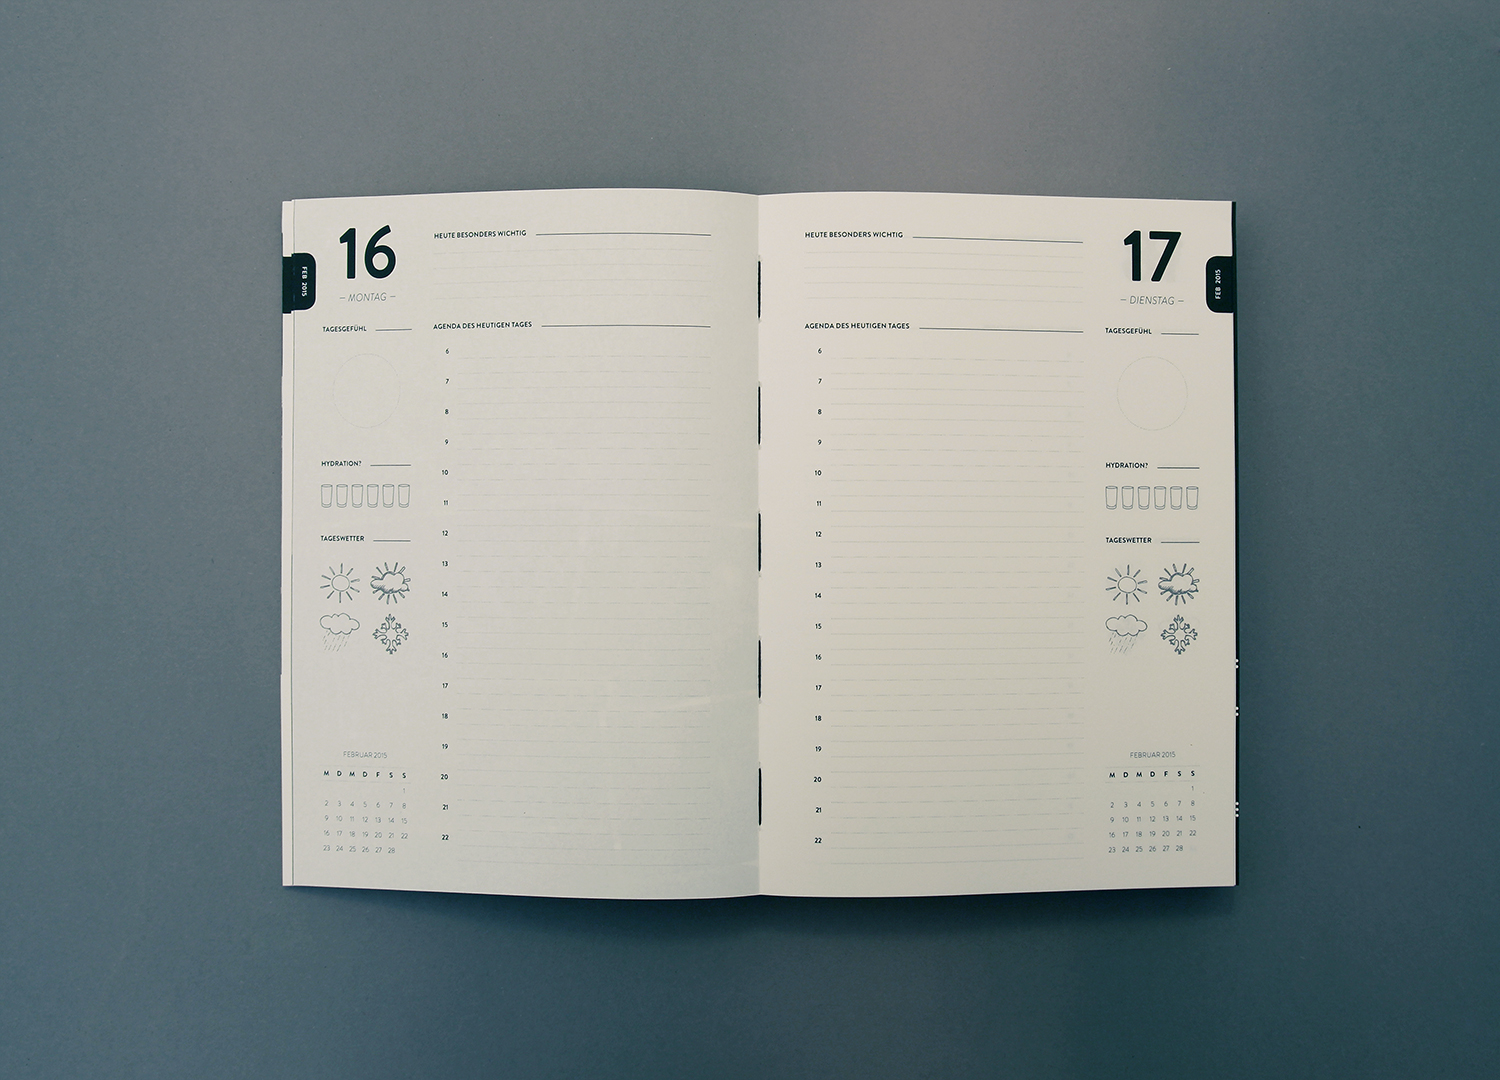 Detailansicht des Kalenders, der Agenda 2015